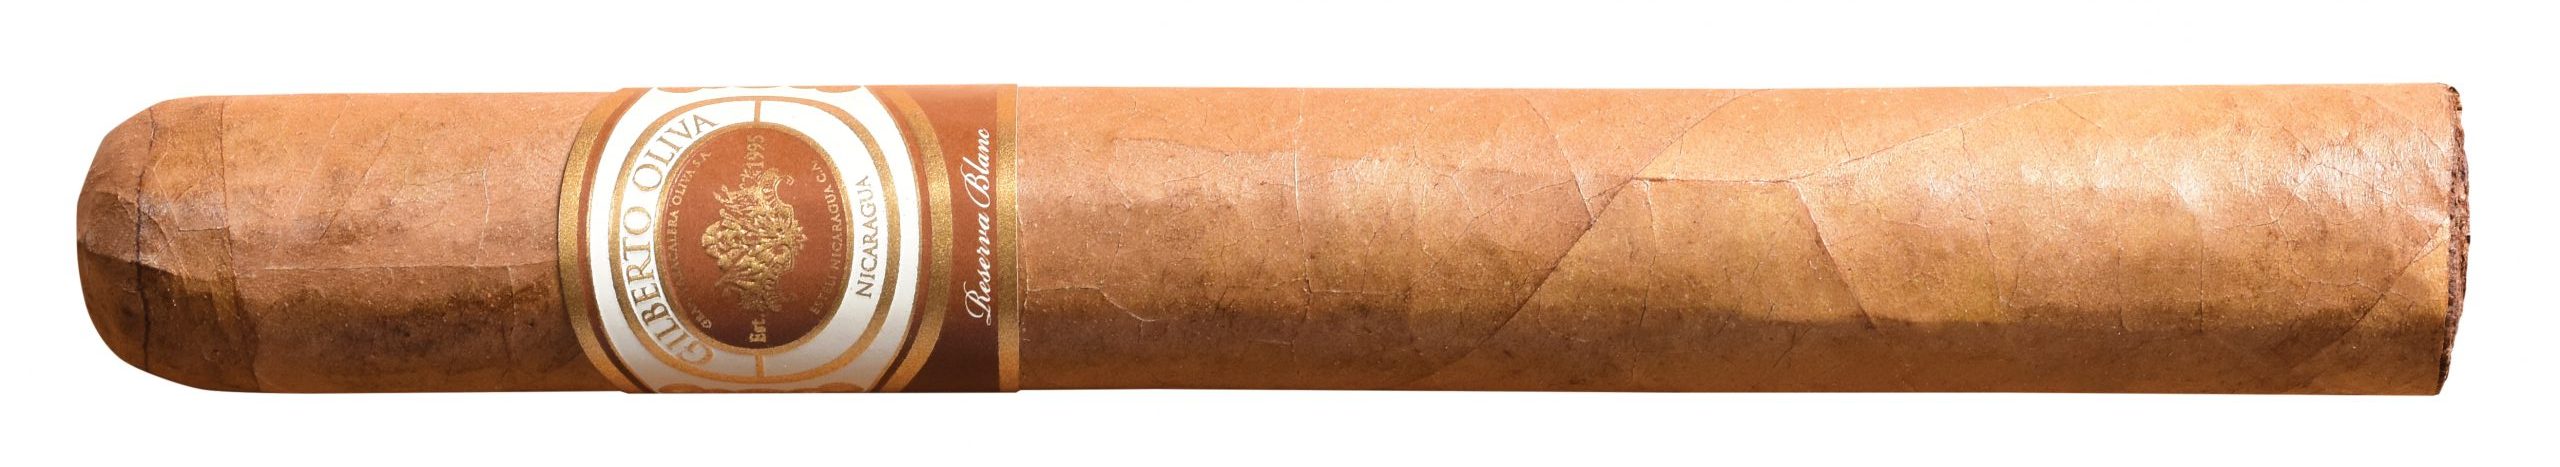 gilberto oliva banc toro single cigar